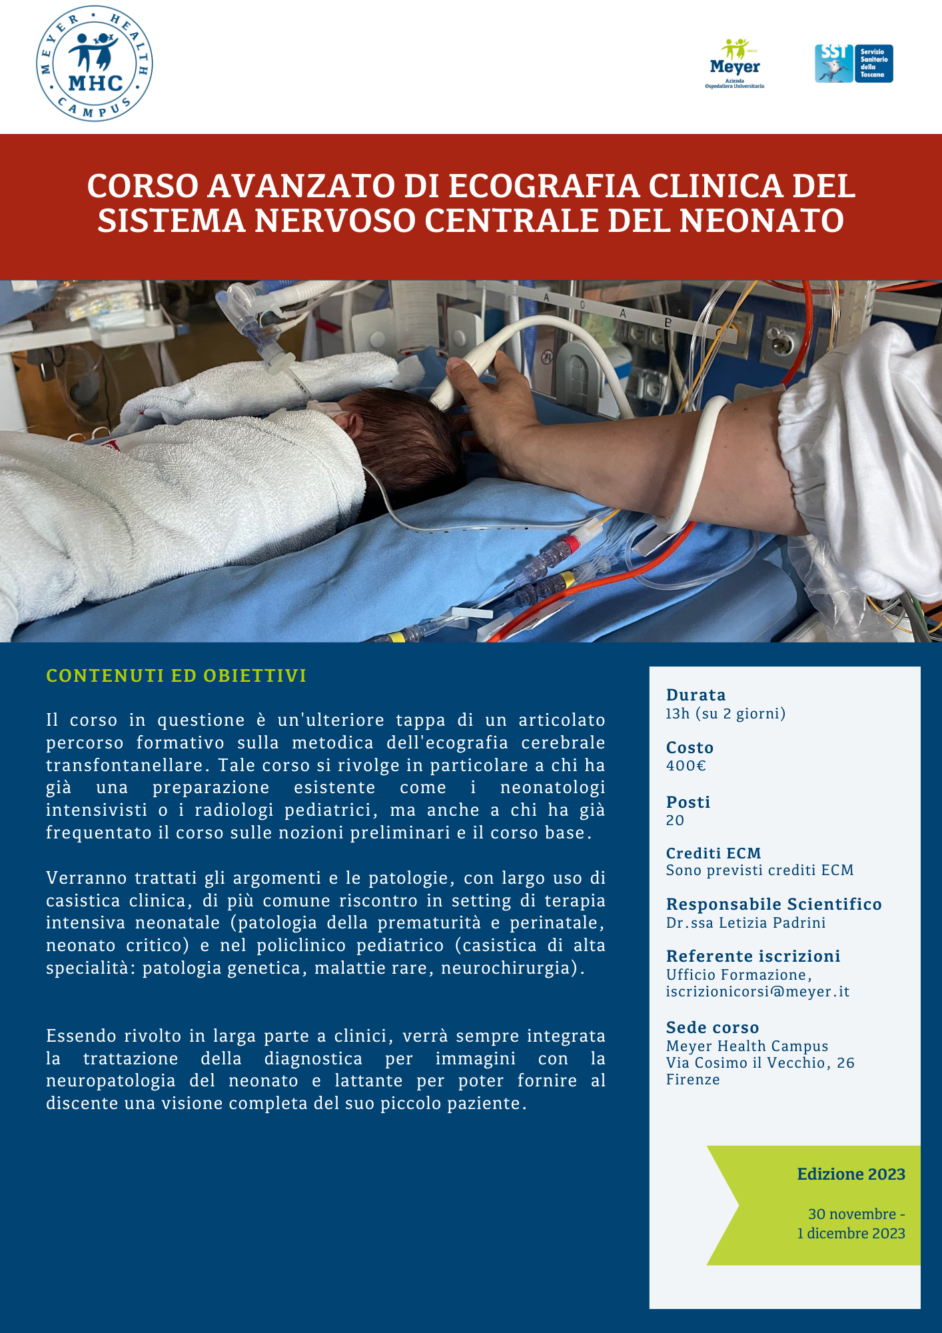 Corso avanzato di ecografia clinica del sistema nervoso centrale del neonato (30 novembre- 1 dicembre 2023)